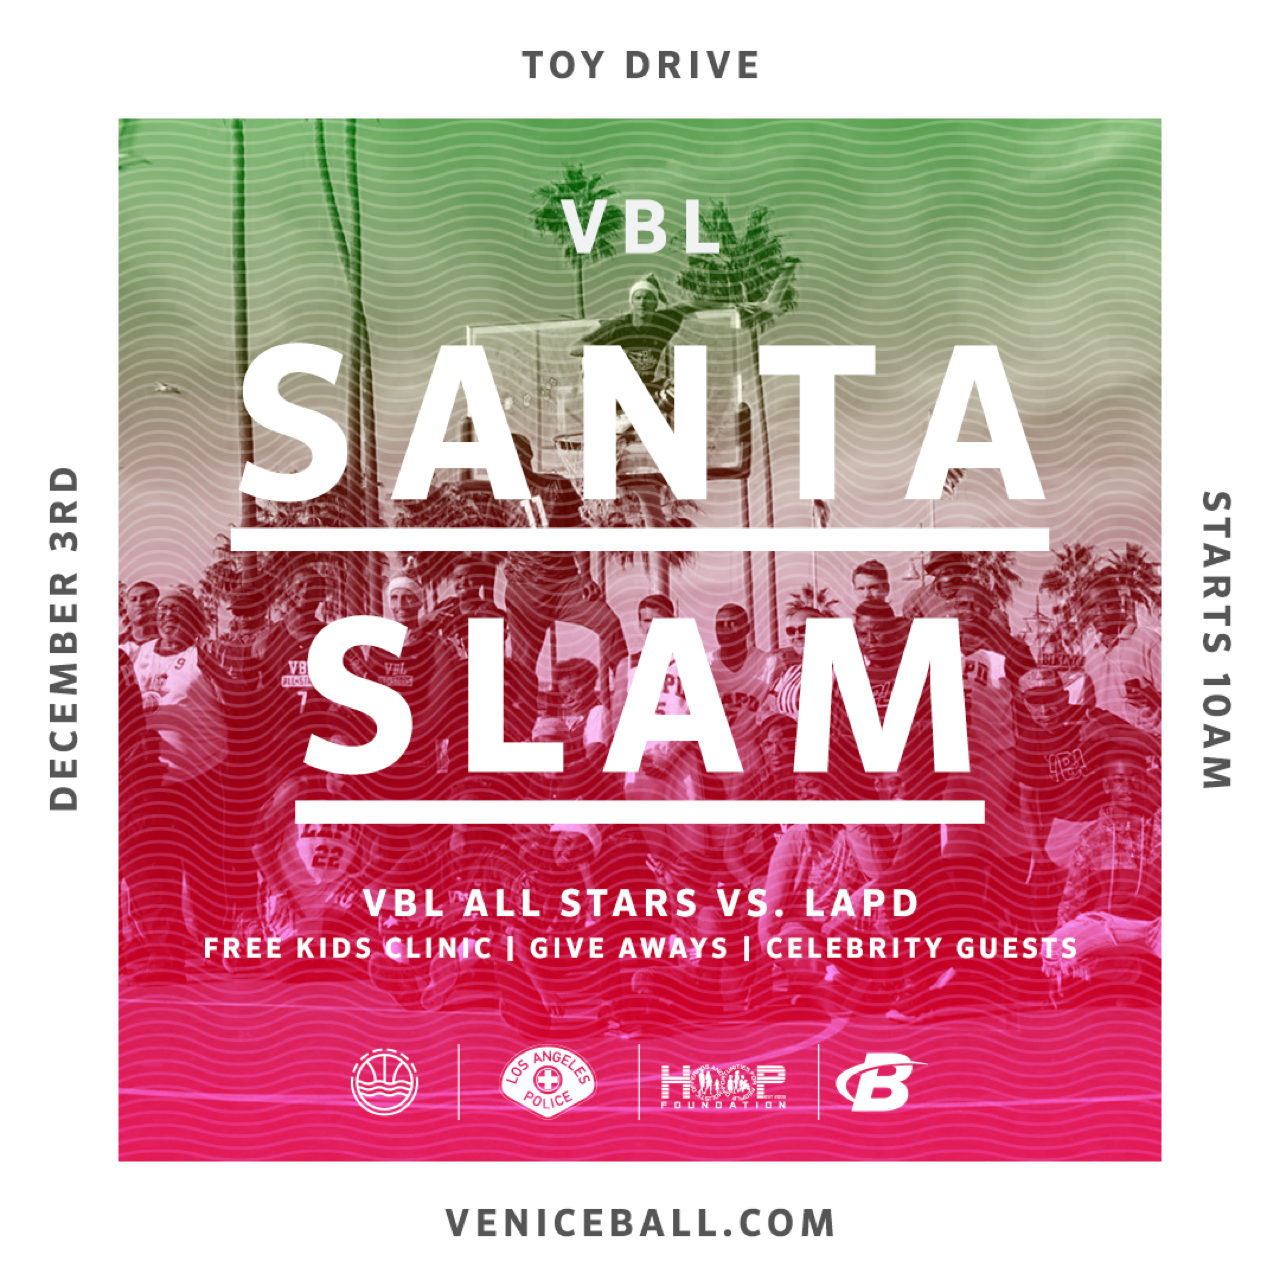 VBL Santa Slam – Toy Drive 2017